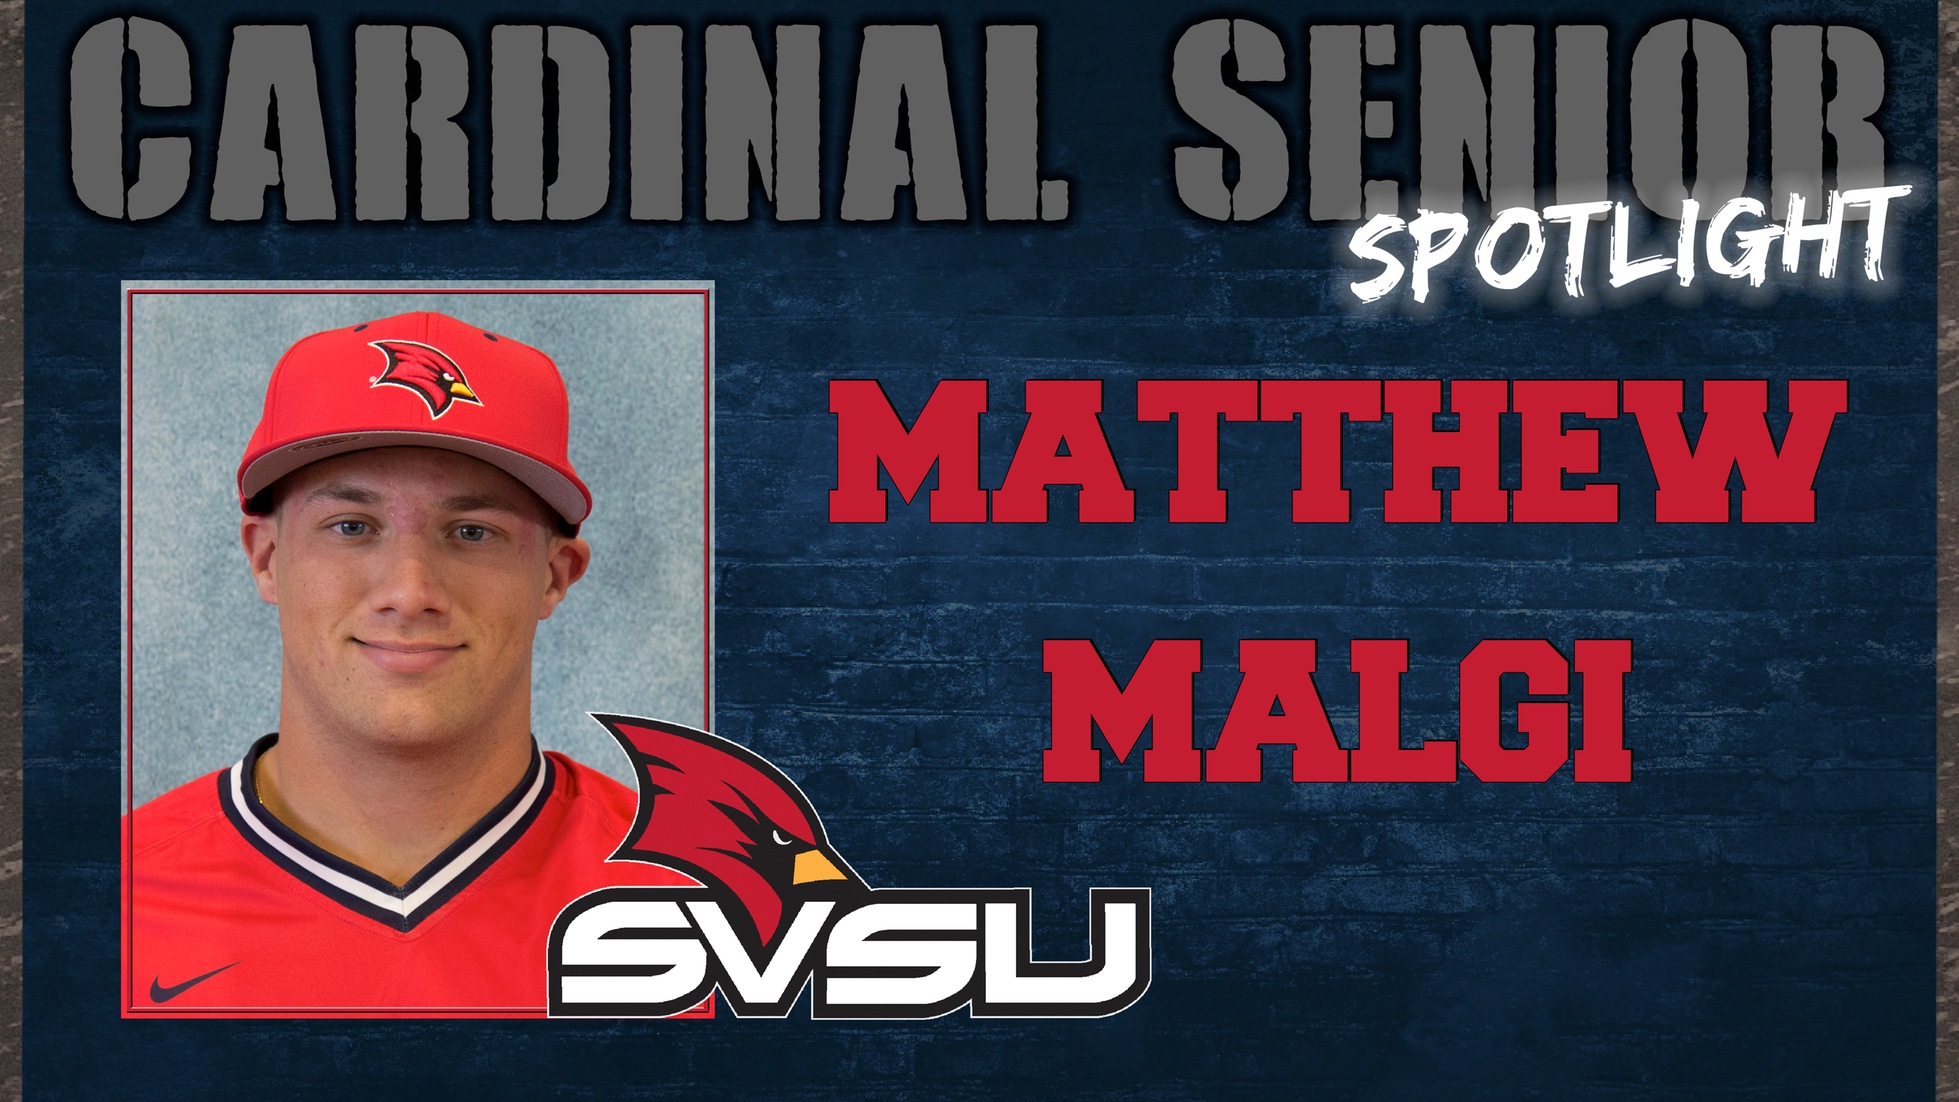 SVSU Cardinal Senior Spotlight - Matthew Malgi